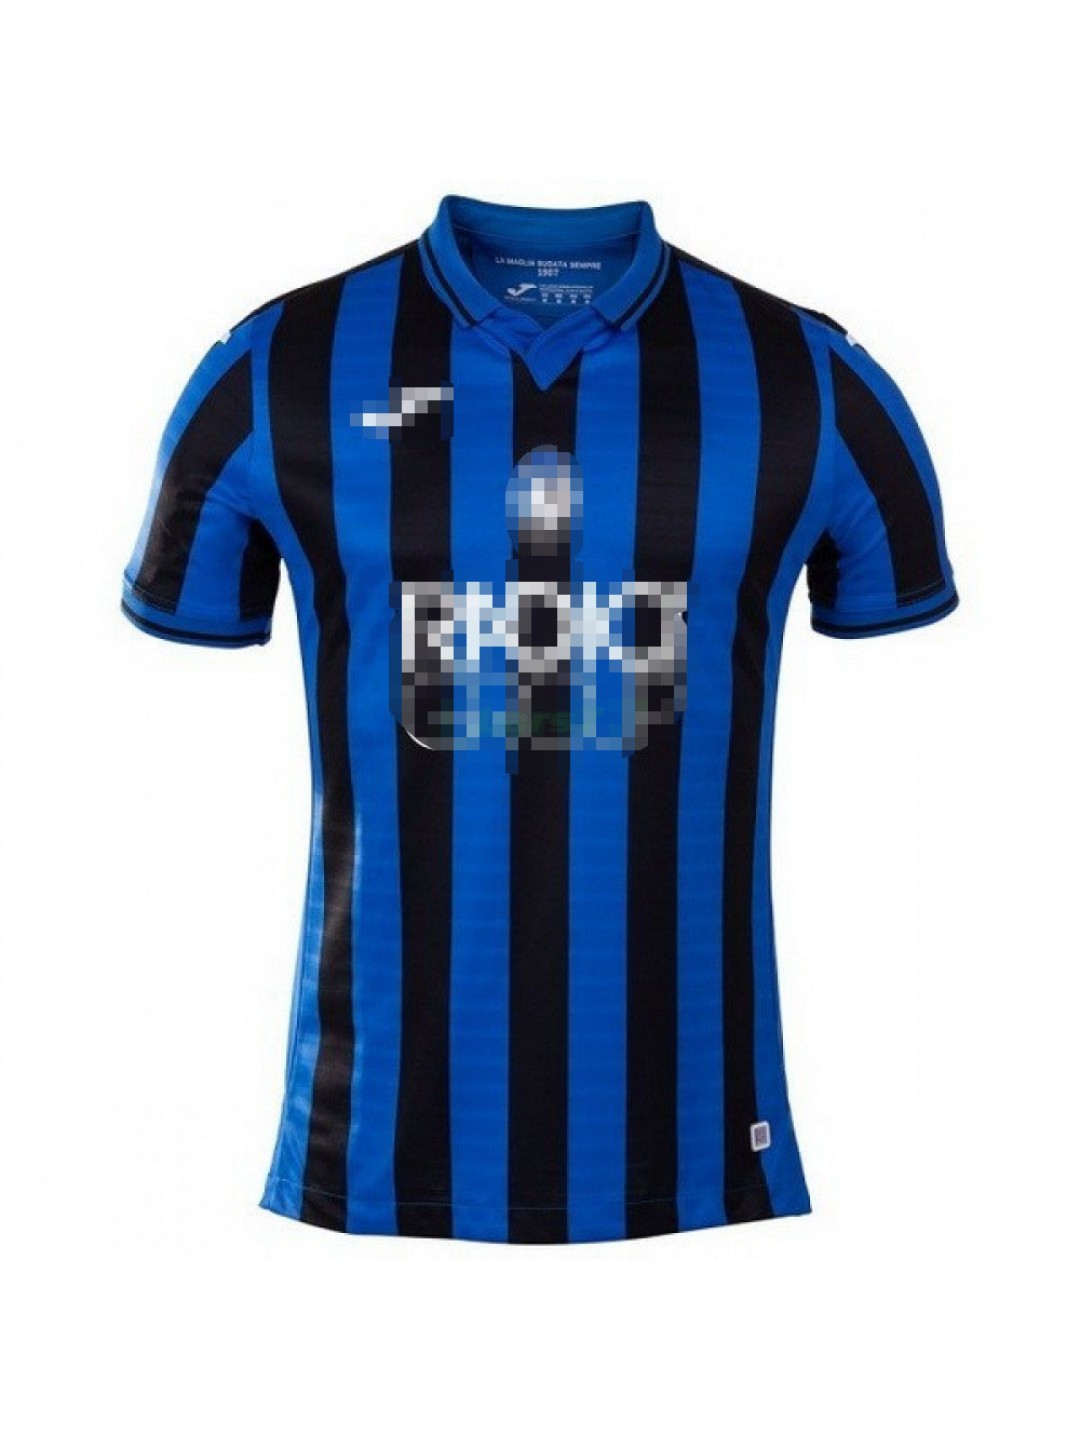 Primera Camiseta Champions League 2019/2020 Camiseta Hombre Atalanta B.C 